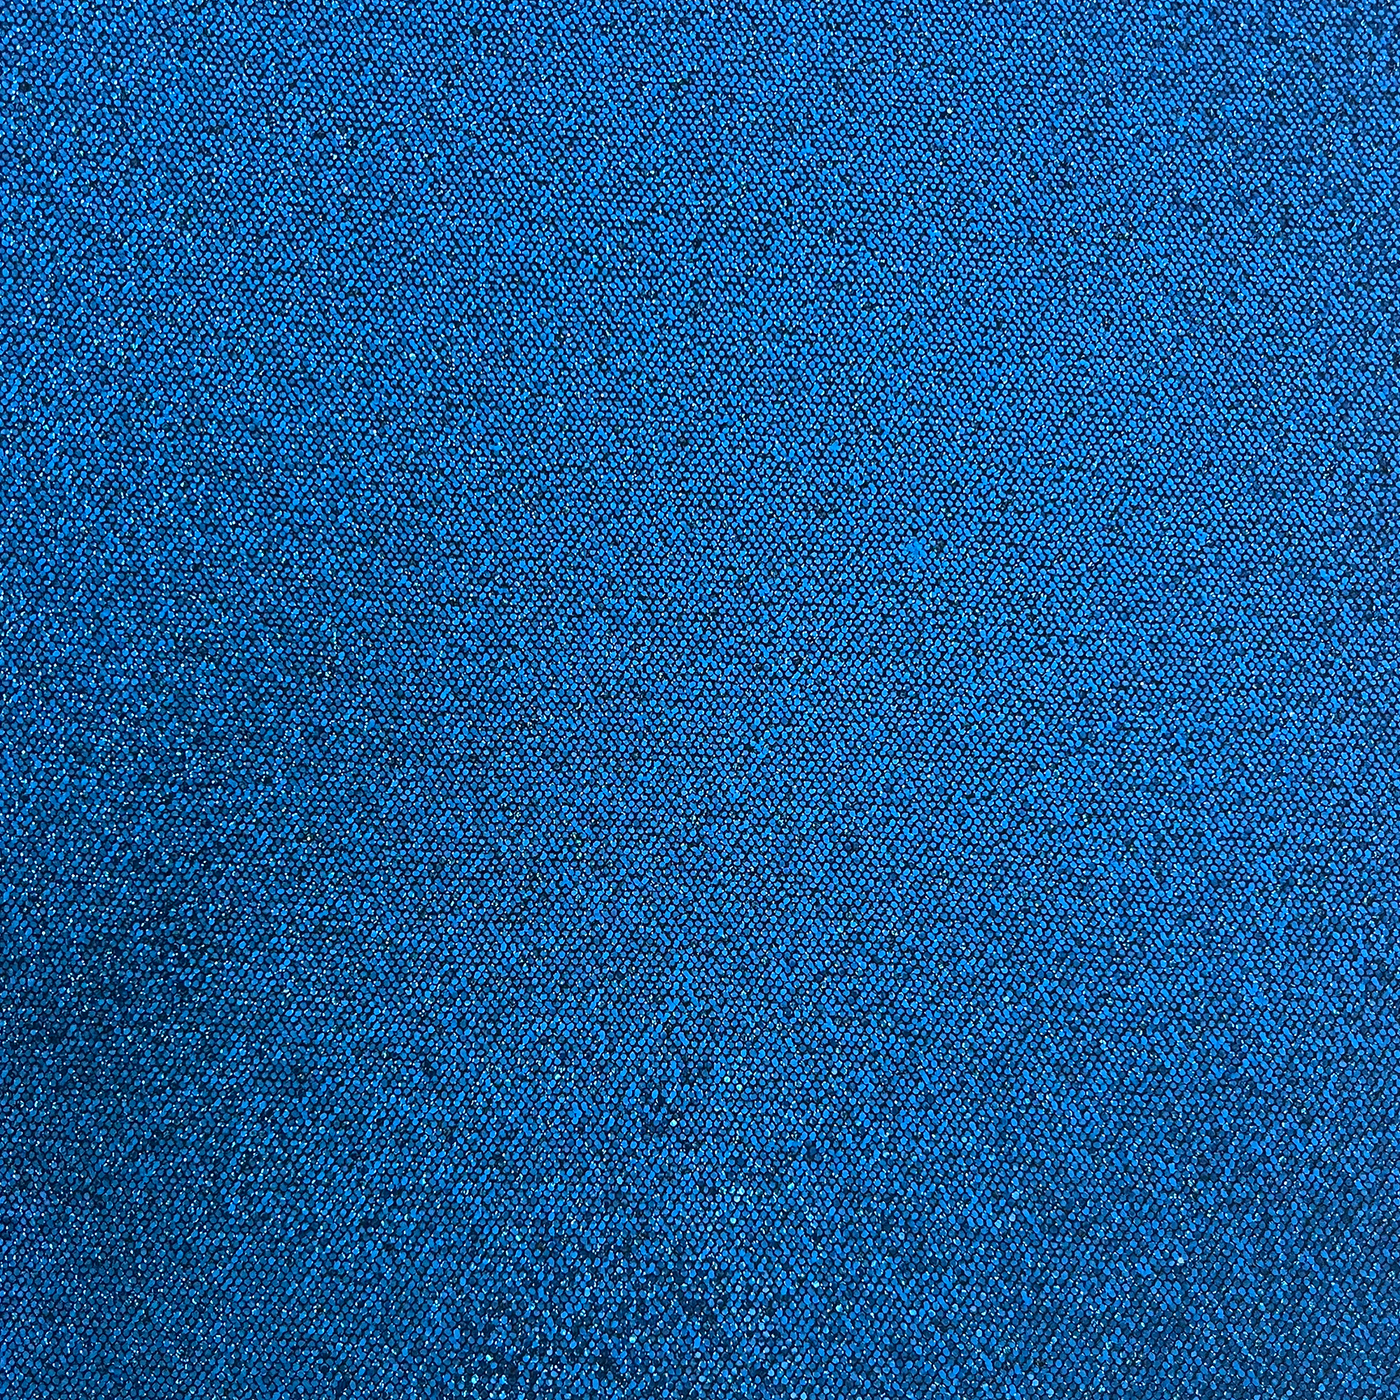 ROYAL BLUE Sequin Glitter Cardstock - blue disco ball glitter 